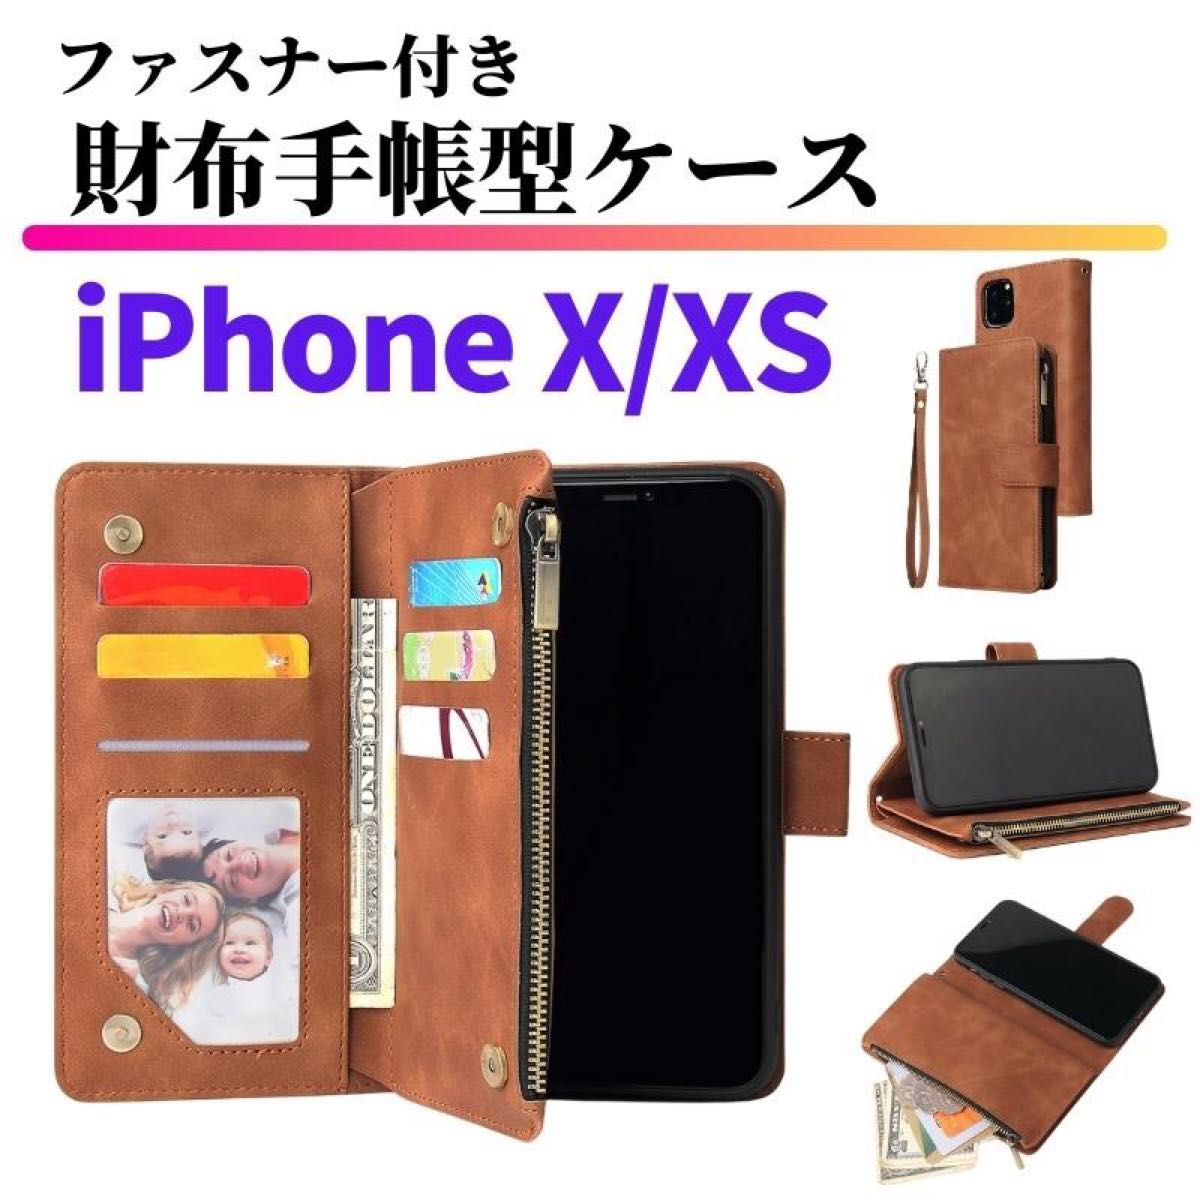 iPhone X XS ケース 手帳型 お財布 レザー カードケース ジップファスナー収納付 おしゃれ アイフォン スマホケース